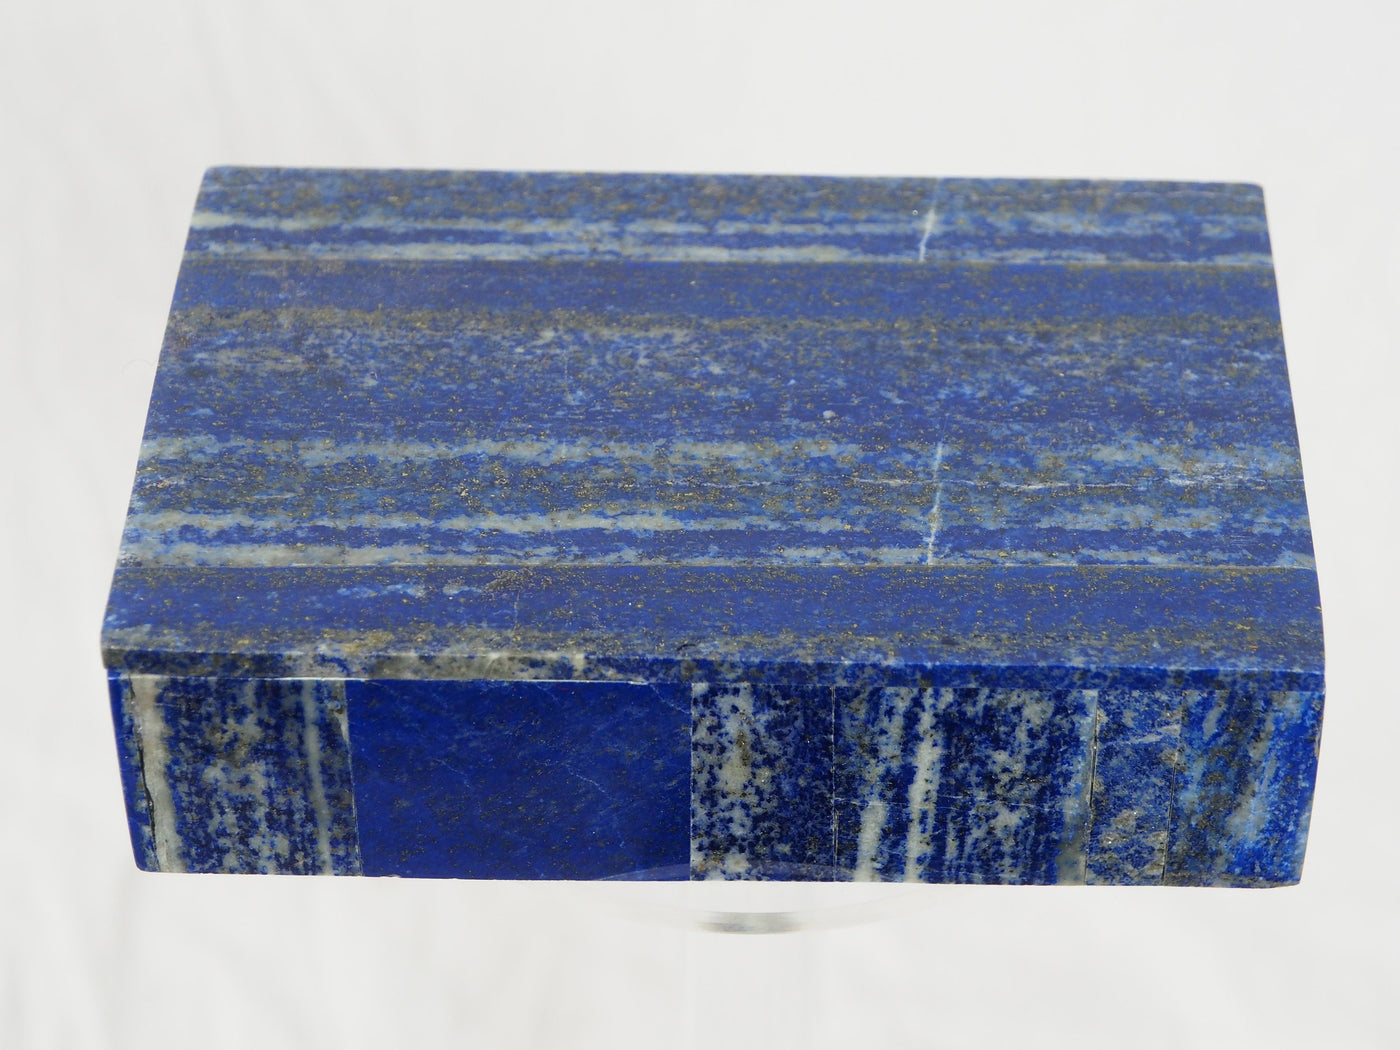 Extravagant Royal blau echt Lapis lazuli Schmuck Dose schatulle Gefäß Dose Büchse deckeldose Süßigkeiten dose aus Afghanistan Nr-21/G  Orientsbazar   